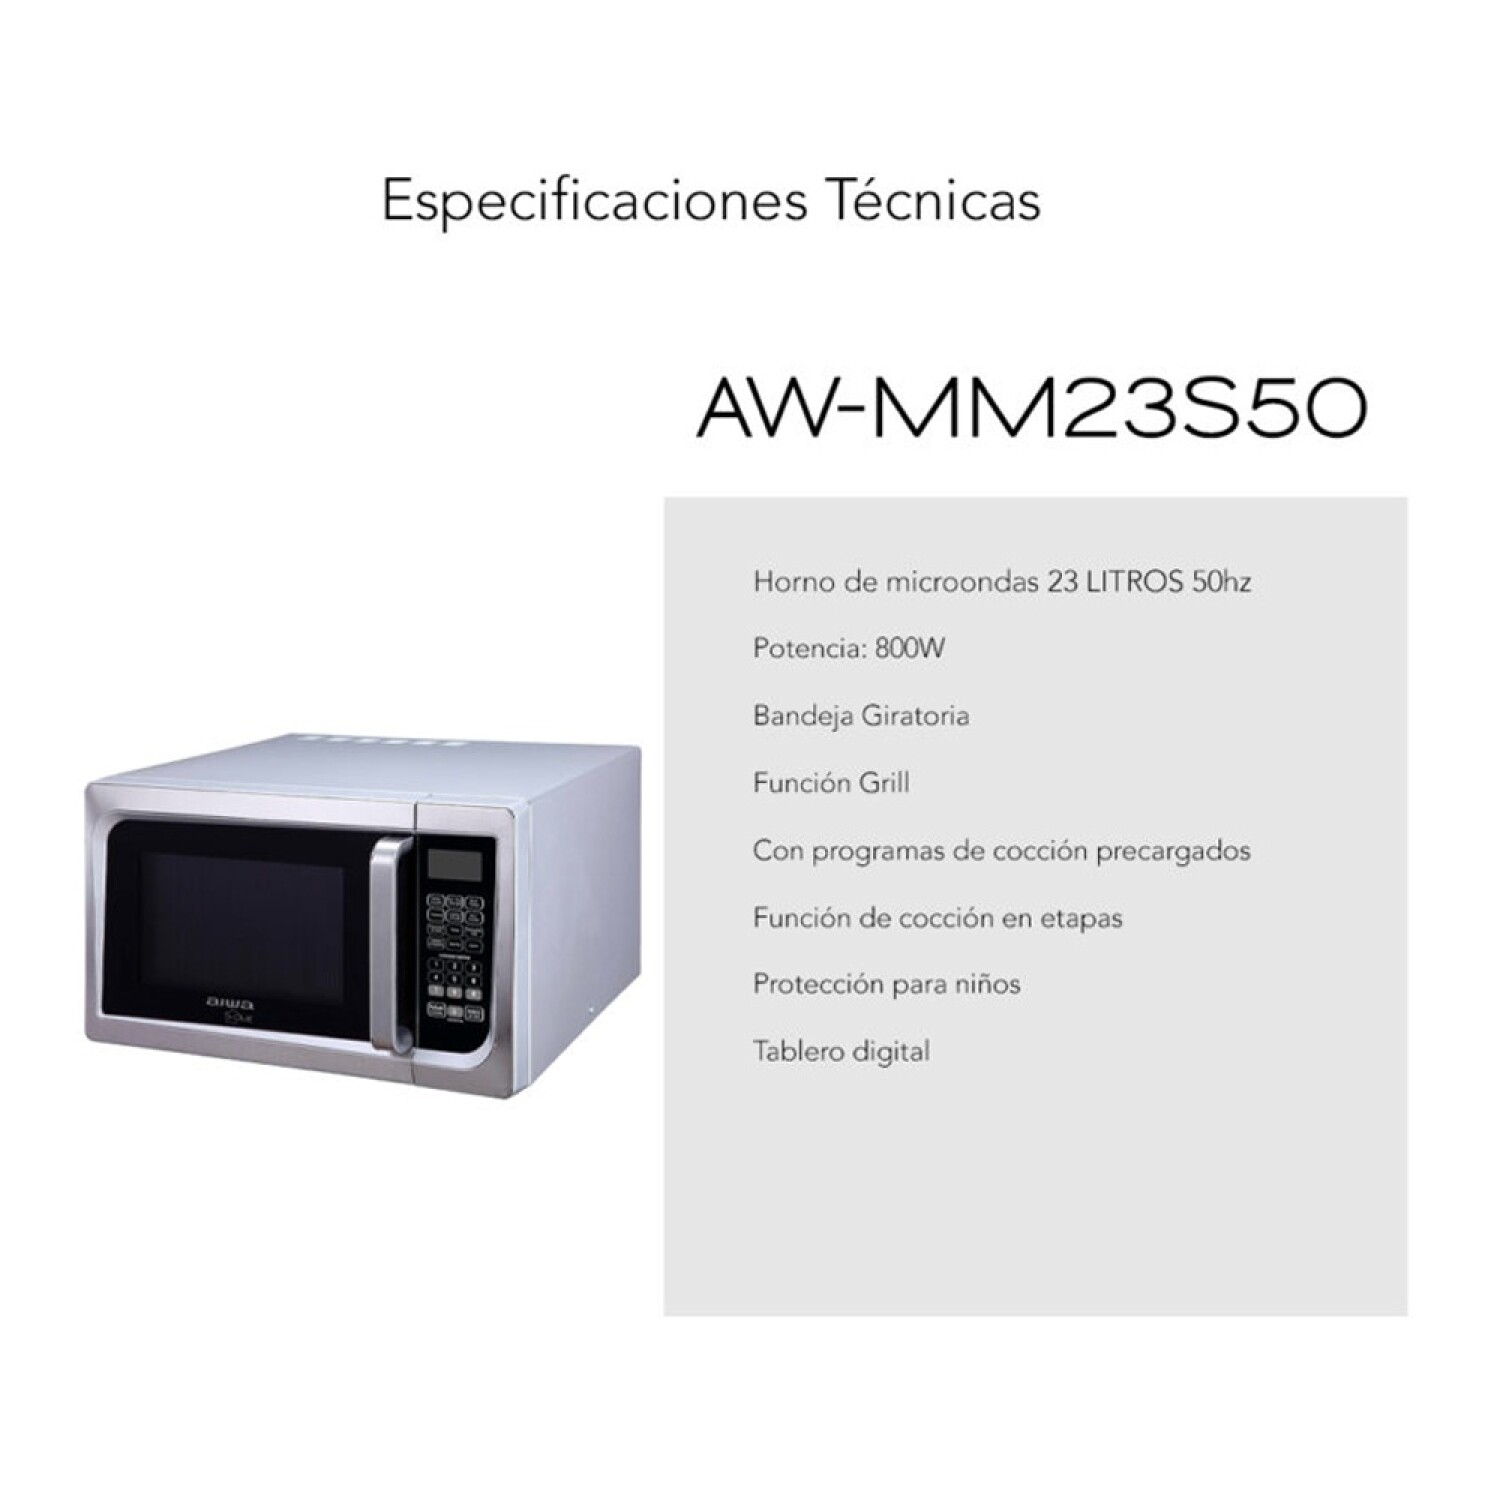 Microondas Digital Aiwa de 23L y 800W en Acero Inox c/ Grill - Plateado —  HTS